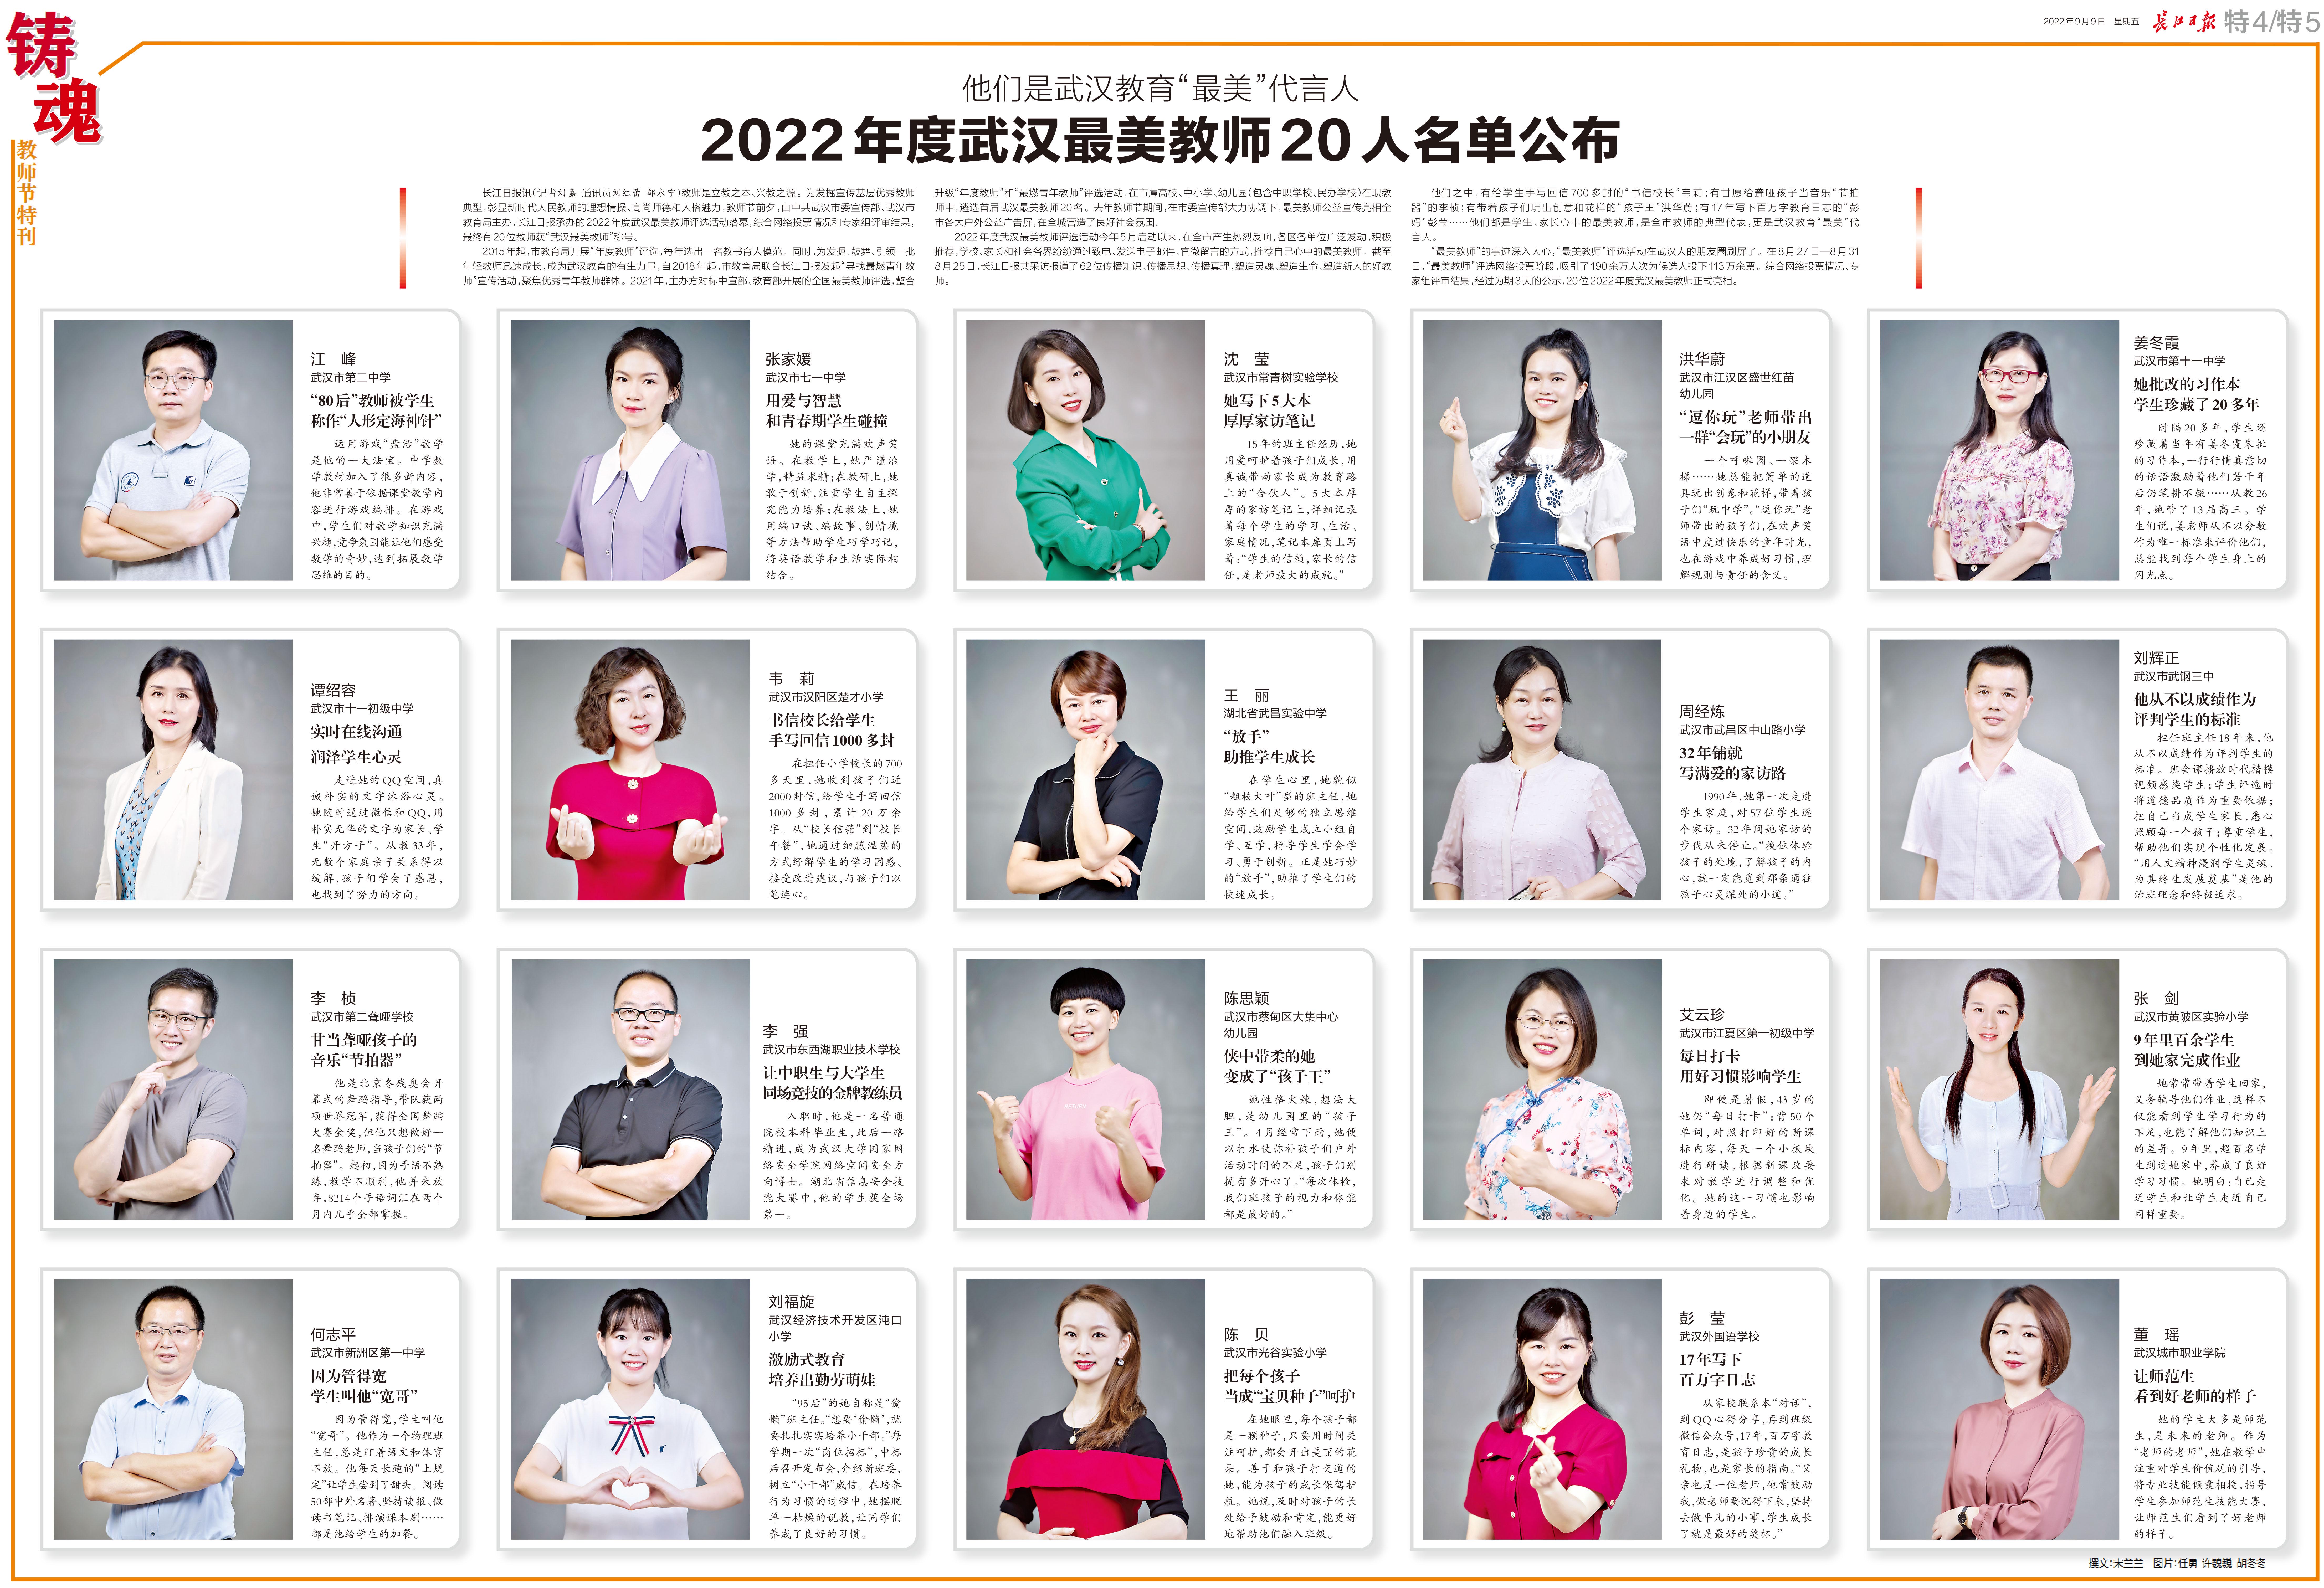 他们是武汉教育“最美”代言人 2022年度武汉最美教师20人名单公布